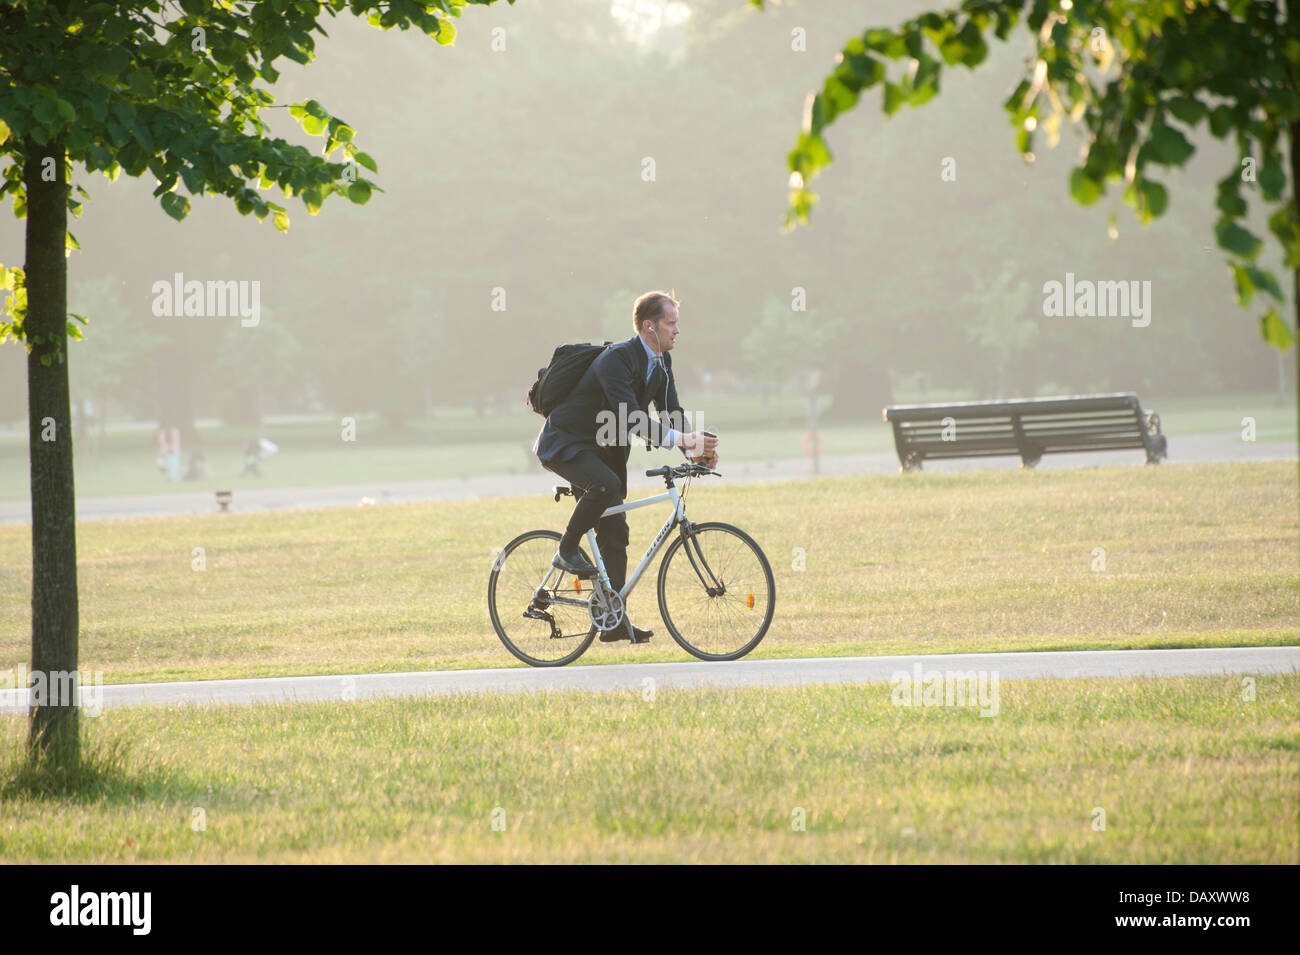 Les jeunes adultes de sexe masculin en tailleur à vélo au travail dans Kensington Gardens Park Londres en regardant son téléphone mobile riding bike Banque D'Images